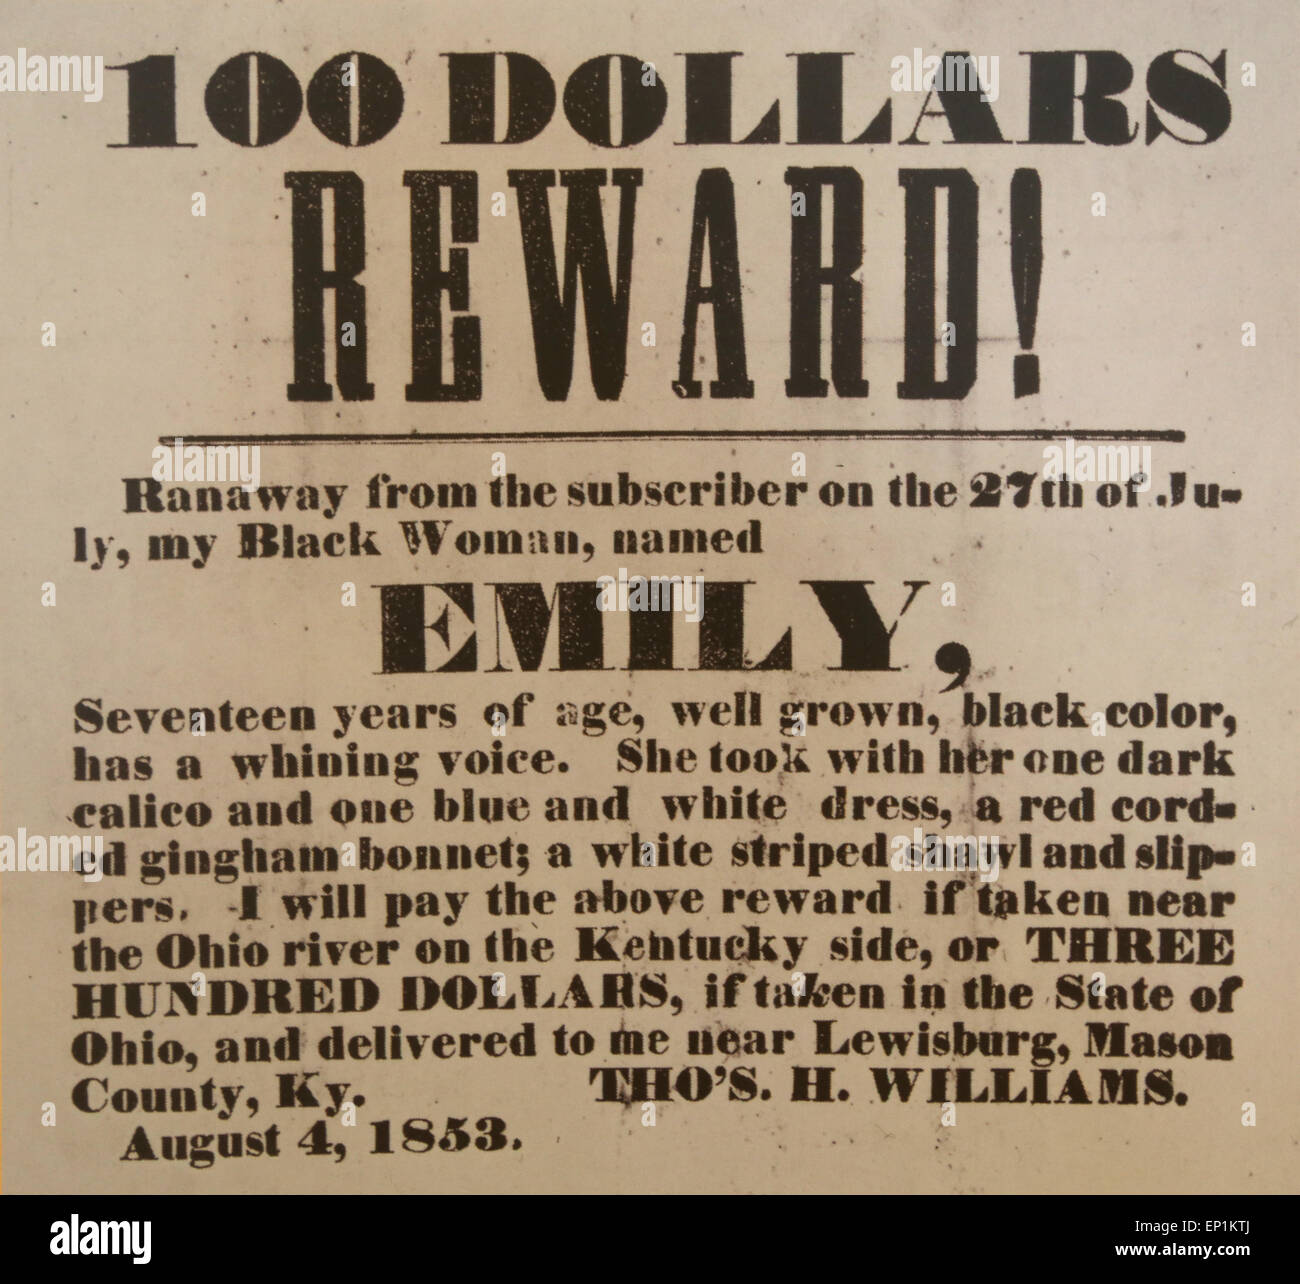 Fugitive Slave. 100 dollari. Premiare ! Nero donna, chiamato Emily. Diciassette anni. Il 4 agosto 1853. Foto Stock